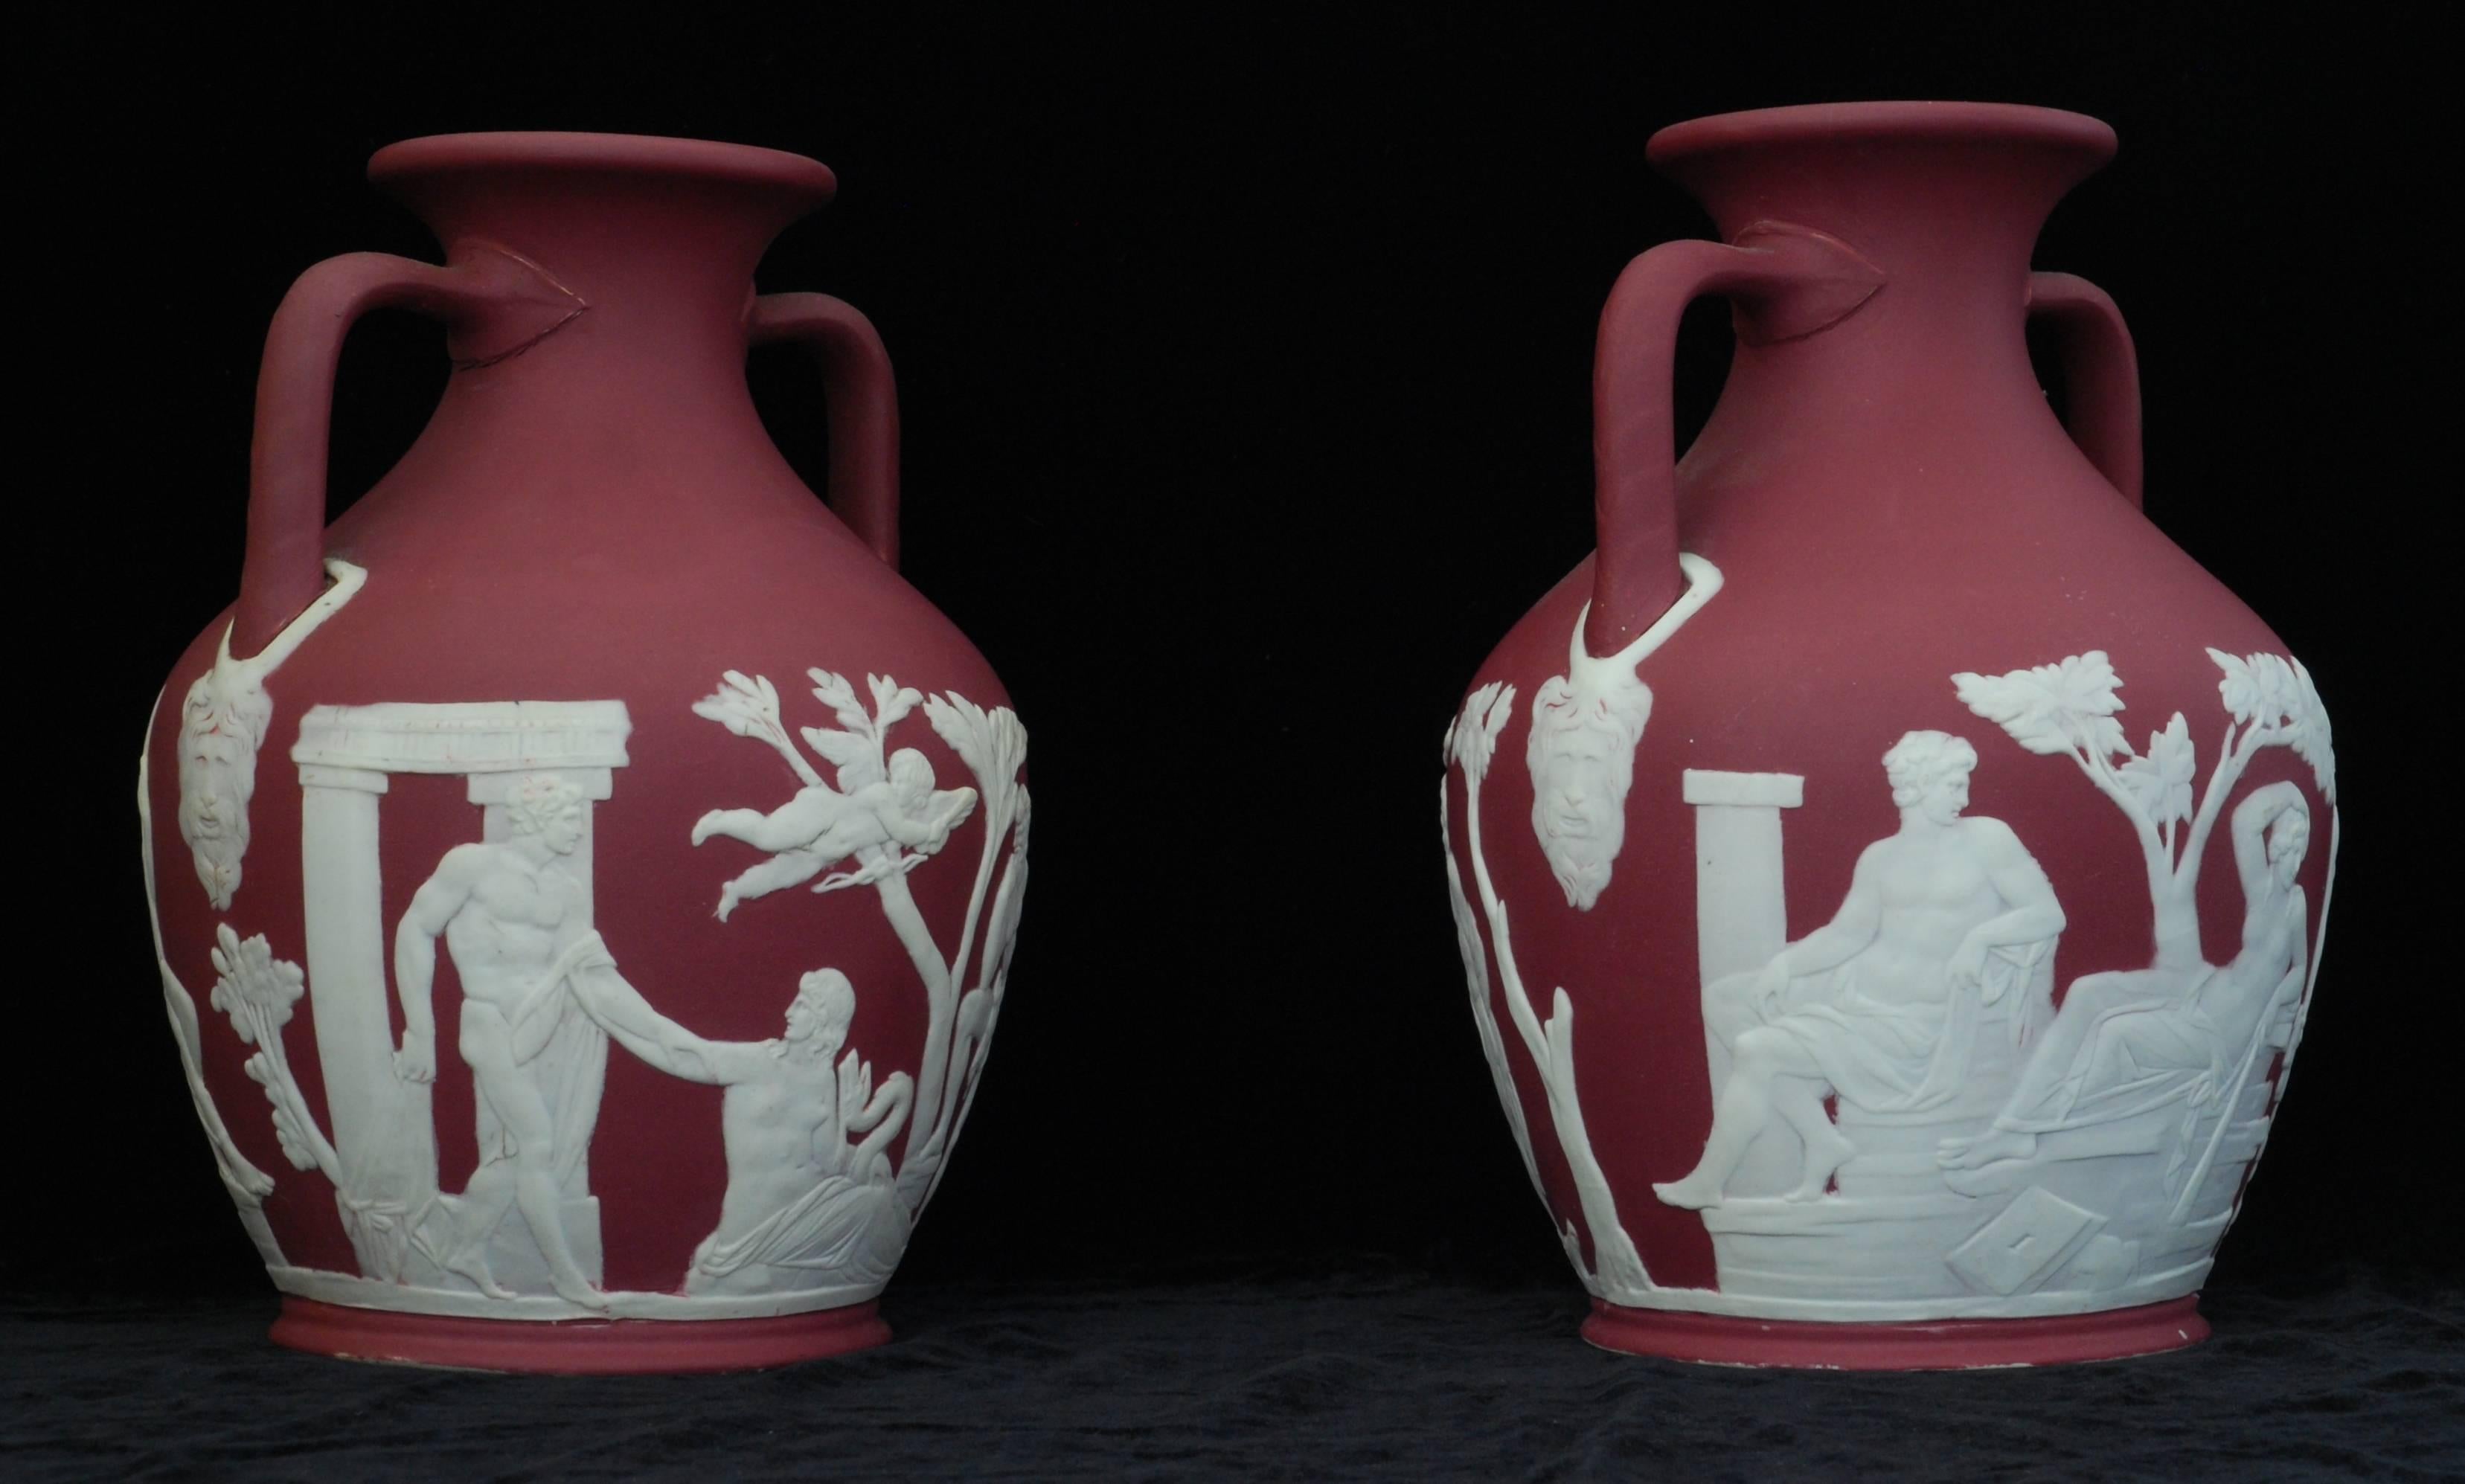 Ein Paar Portland-Vasen aus karmesinrotem Jaspis, getaucht. Beide sind hervorragend, ohne die üblichen Verluste oder Blutungen, die mit dieser unglücklichen Farbe verbunden sind.

Karminrot war eine der experimentellen Farben, die Harry Barnard in